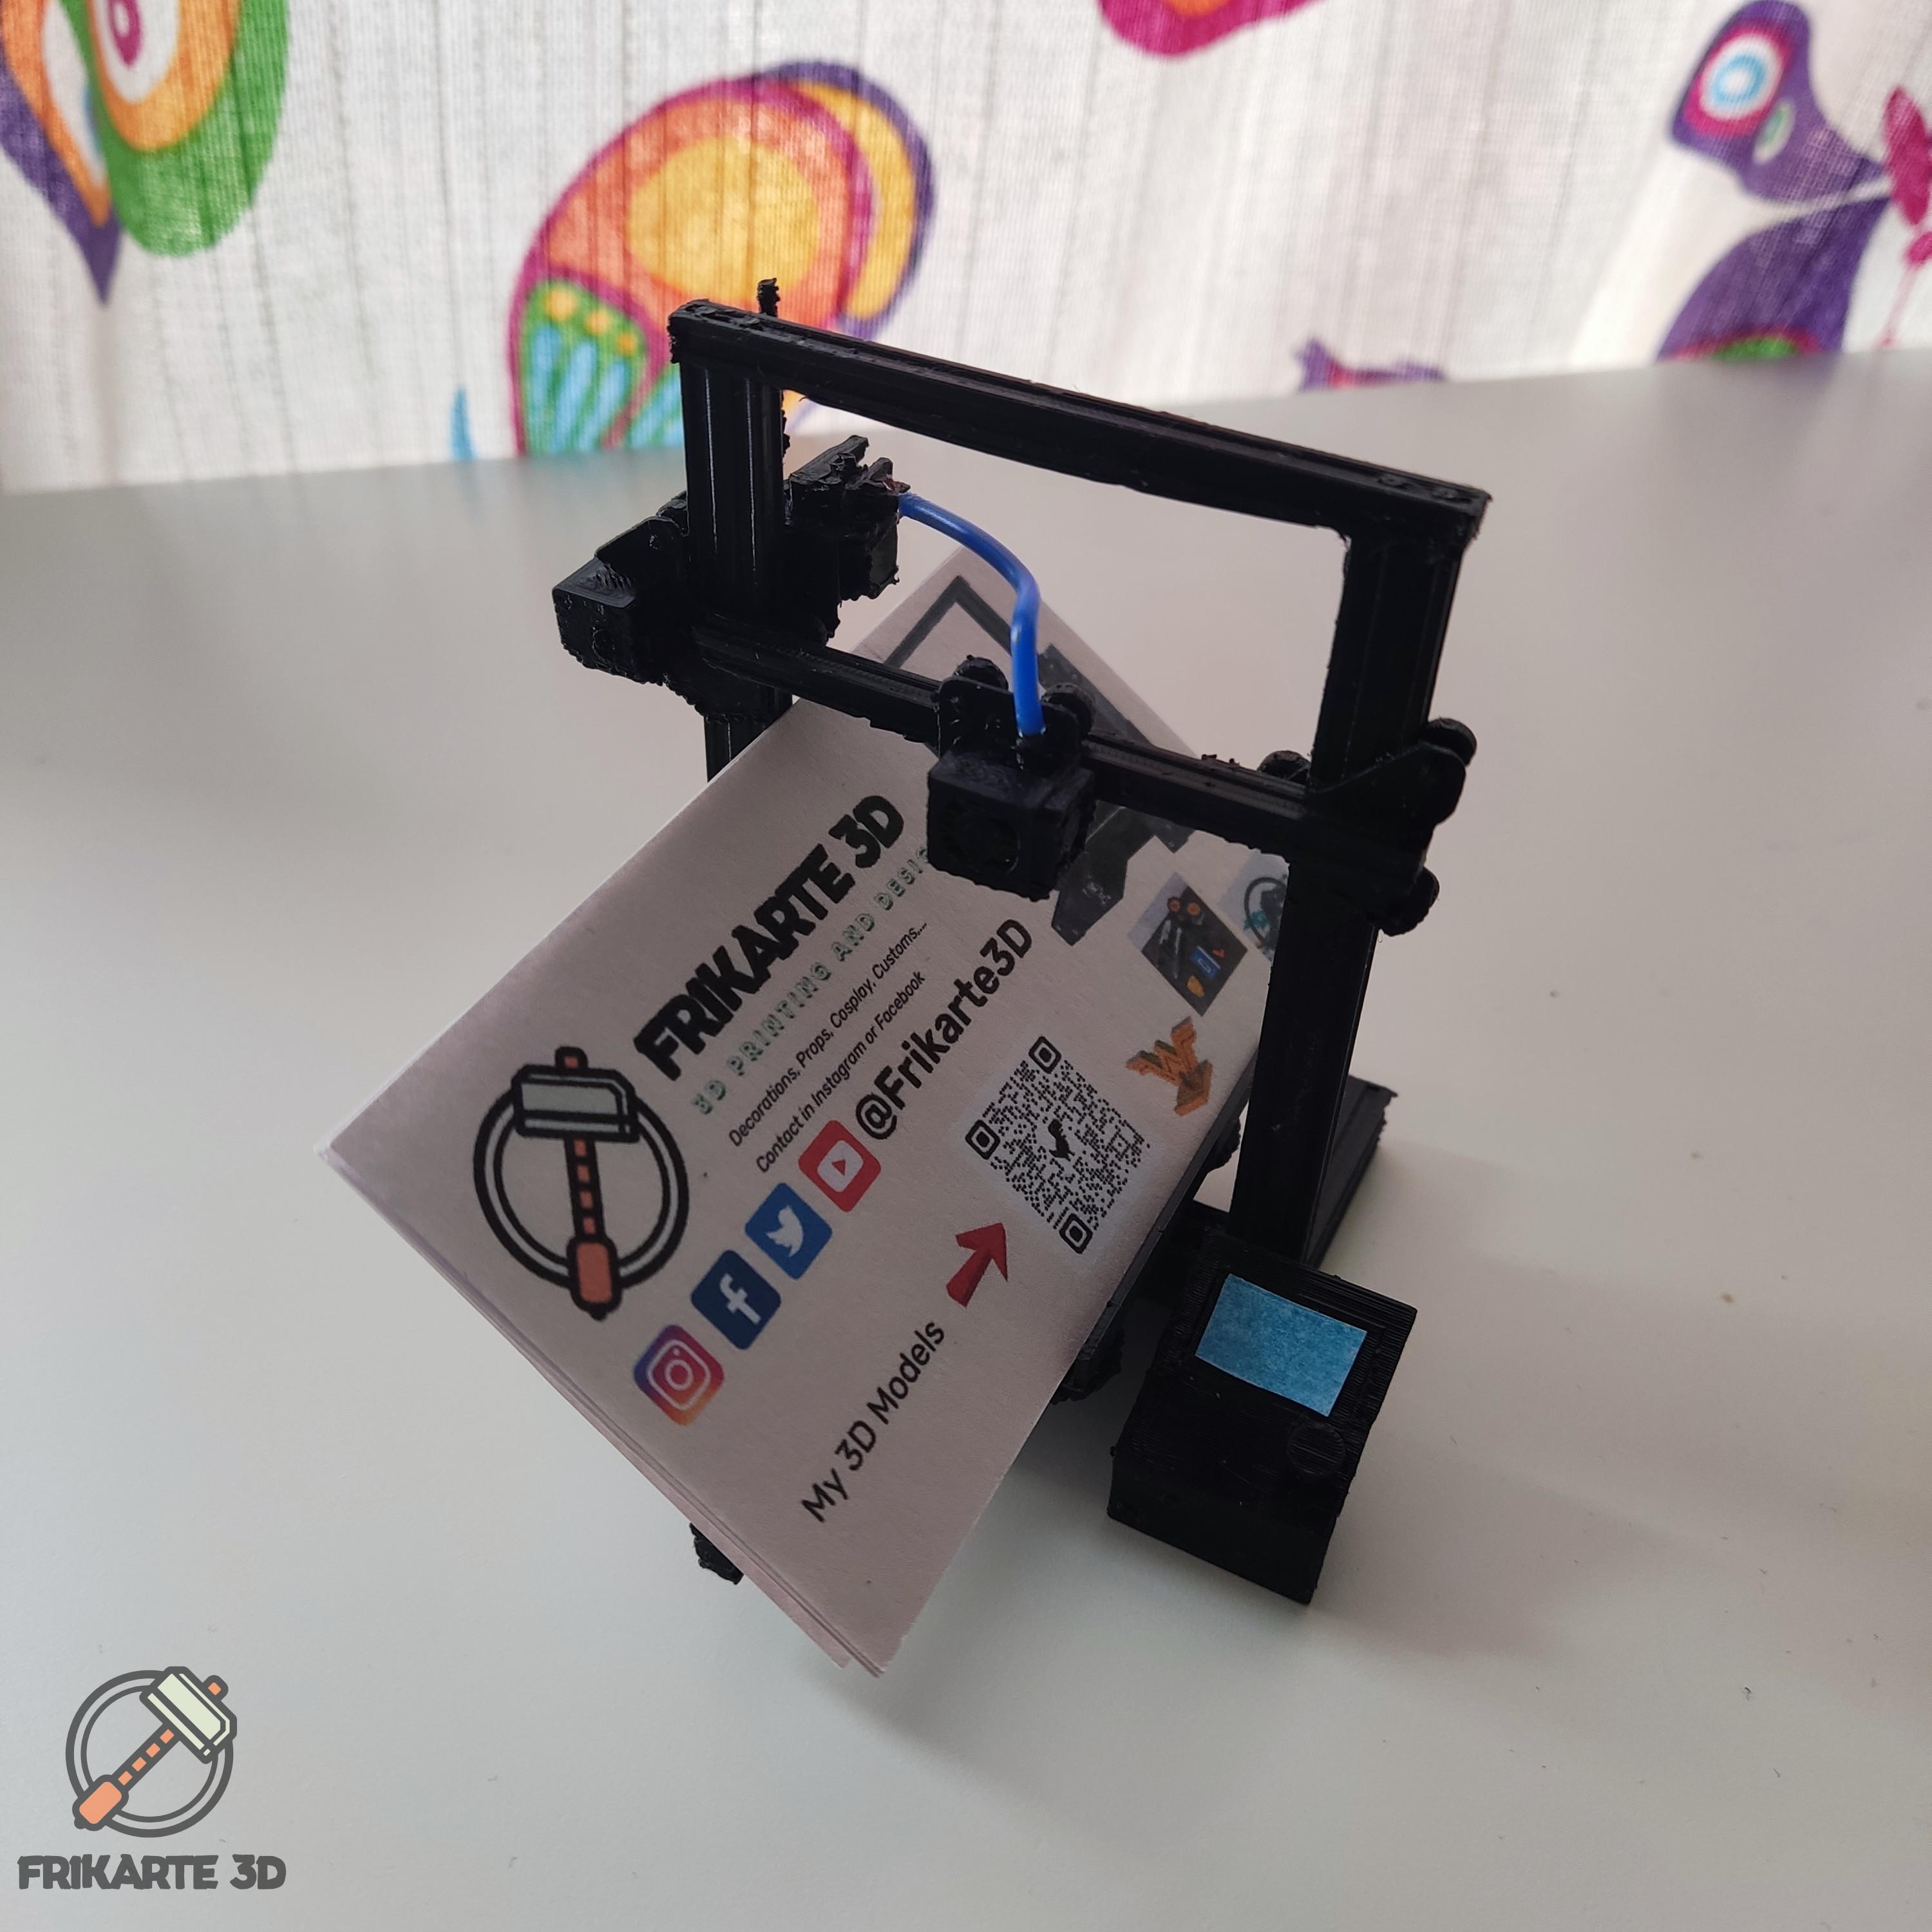 Ender 3 Pro Business Card Holder 3d model